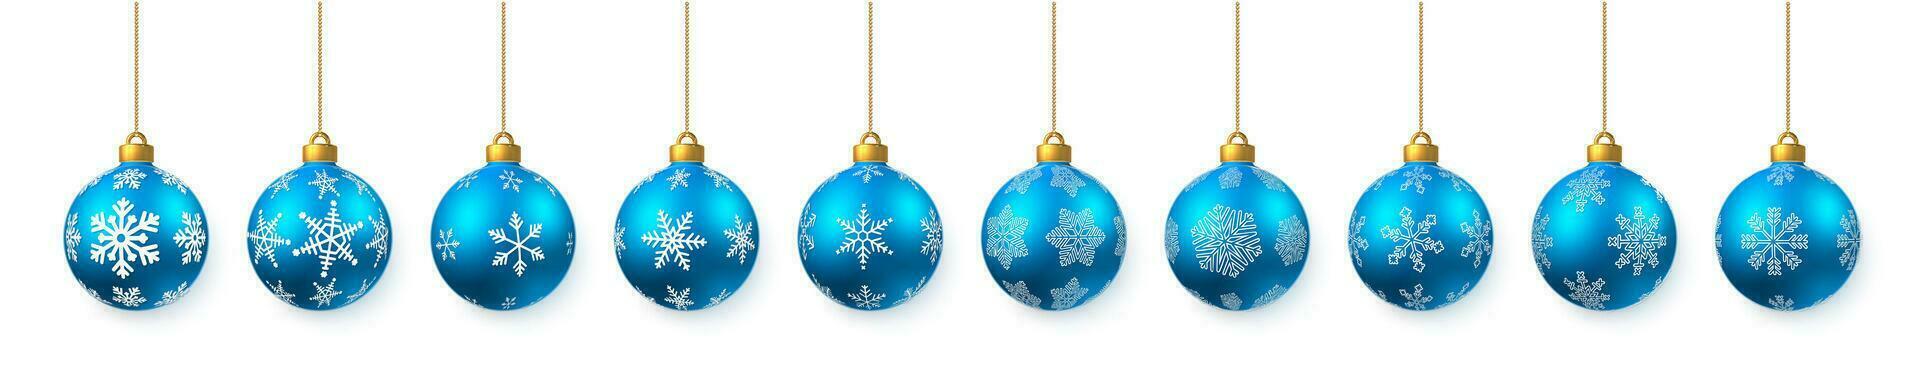 Blau glänzend glühend Weihnachten Bälle. Weihnachten Glas Ball. Urlaub Dekoration Vorlage. Vektor Illustration